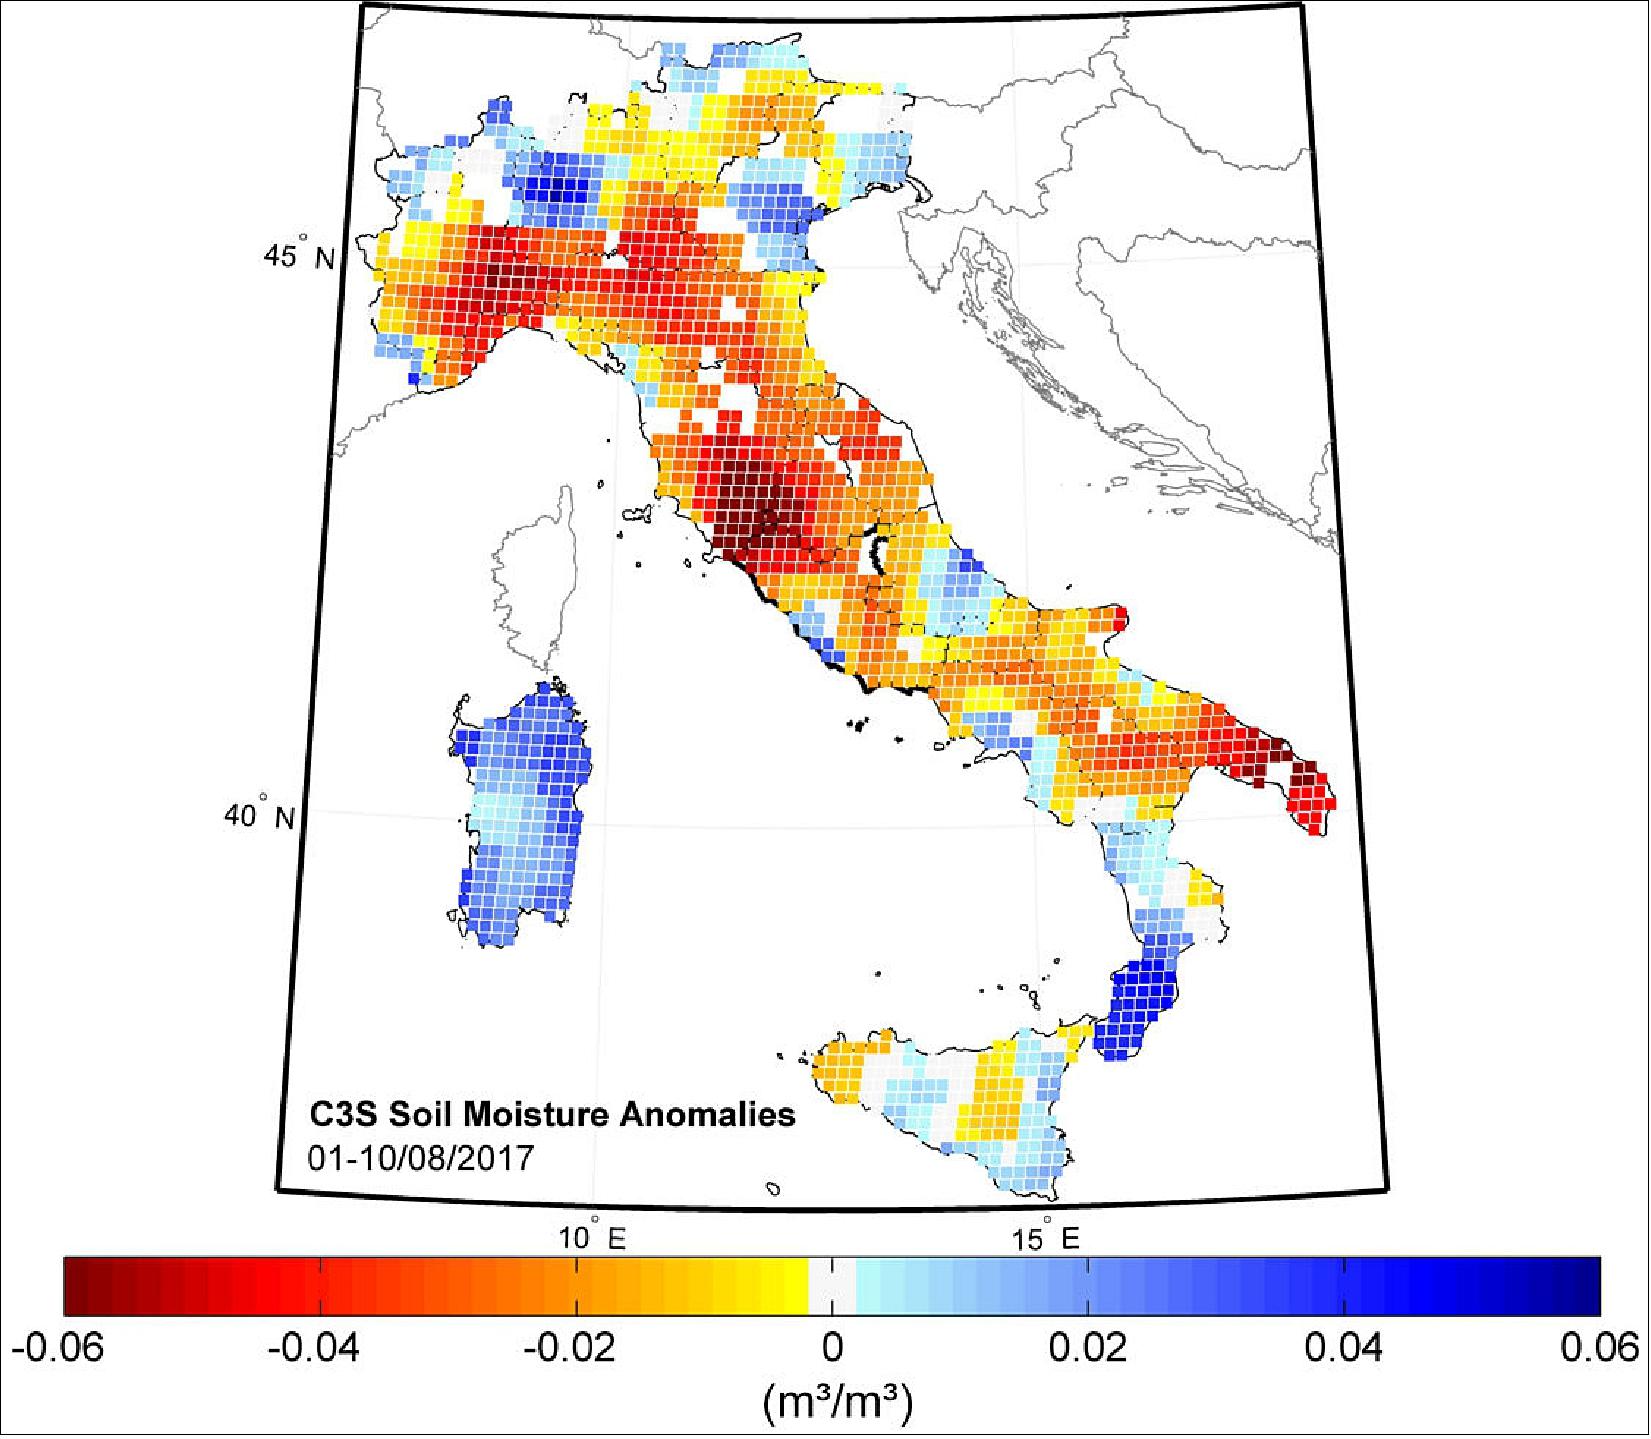 Figure 46: August 2017 soil moisture anomalies (image credit: C3S/ECMWF/TU Wien/VanderSat/EODC/AWST/Soil Moisture CCI)